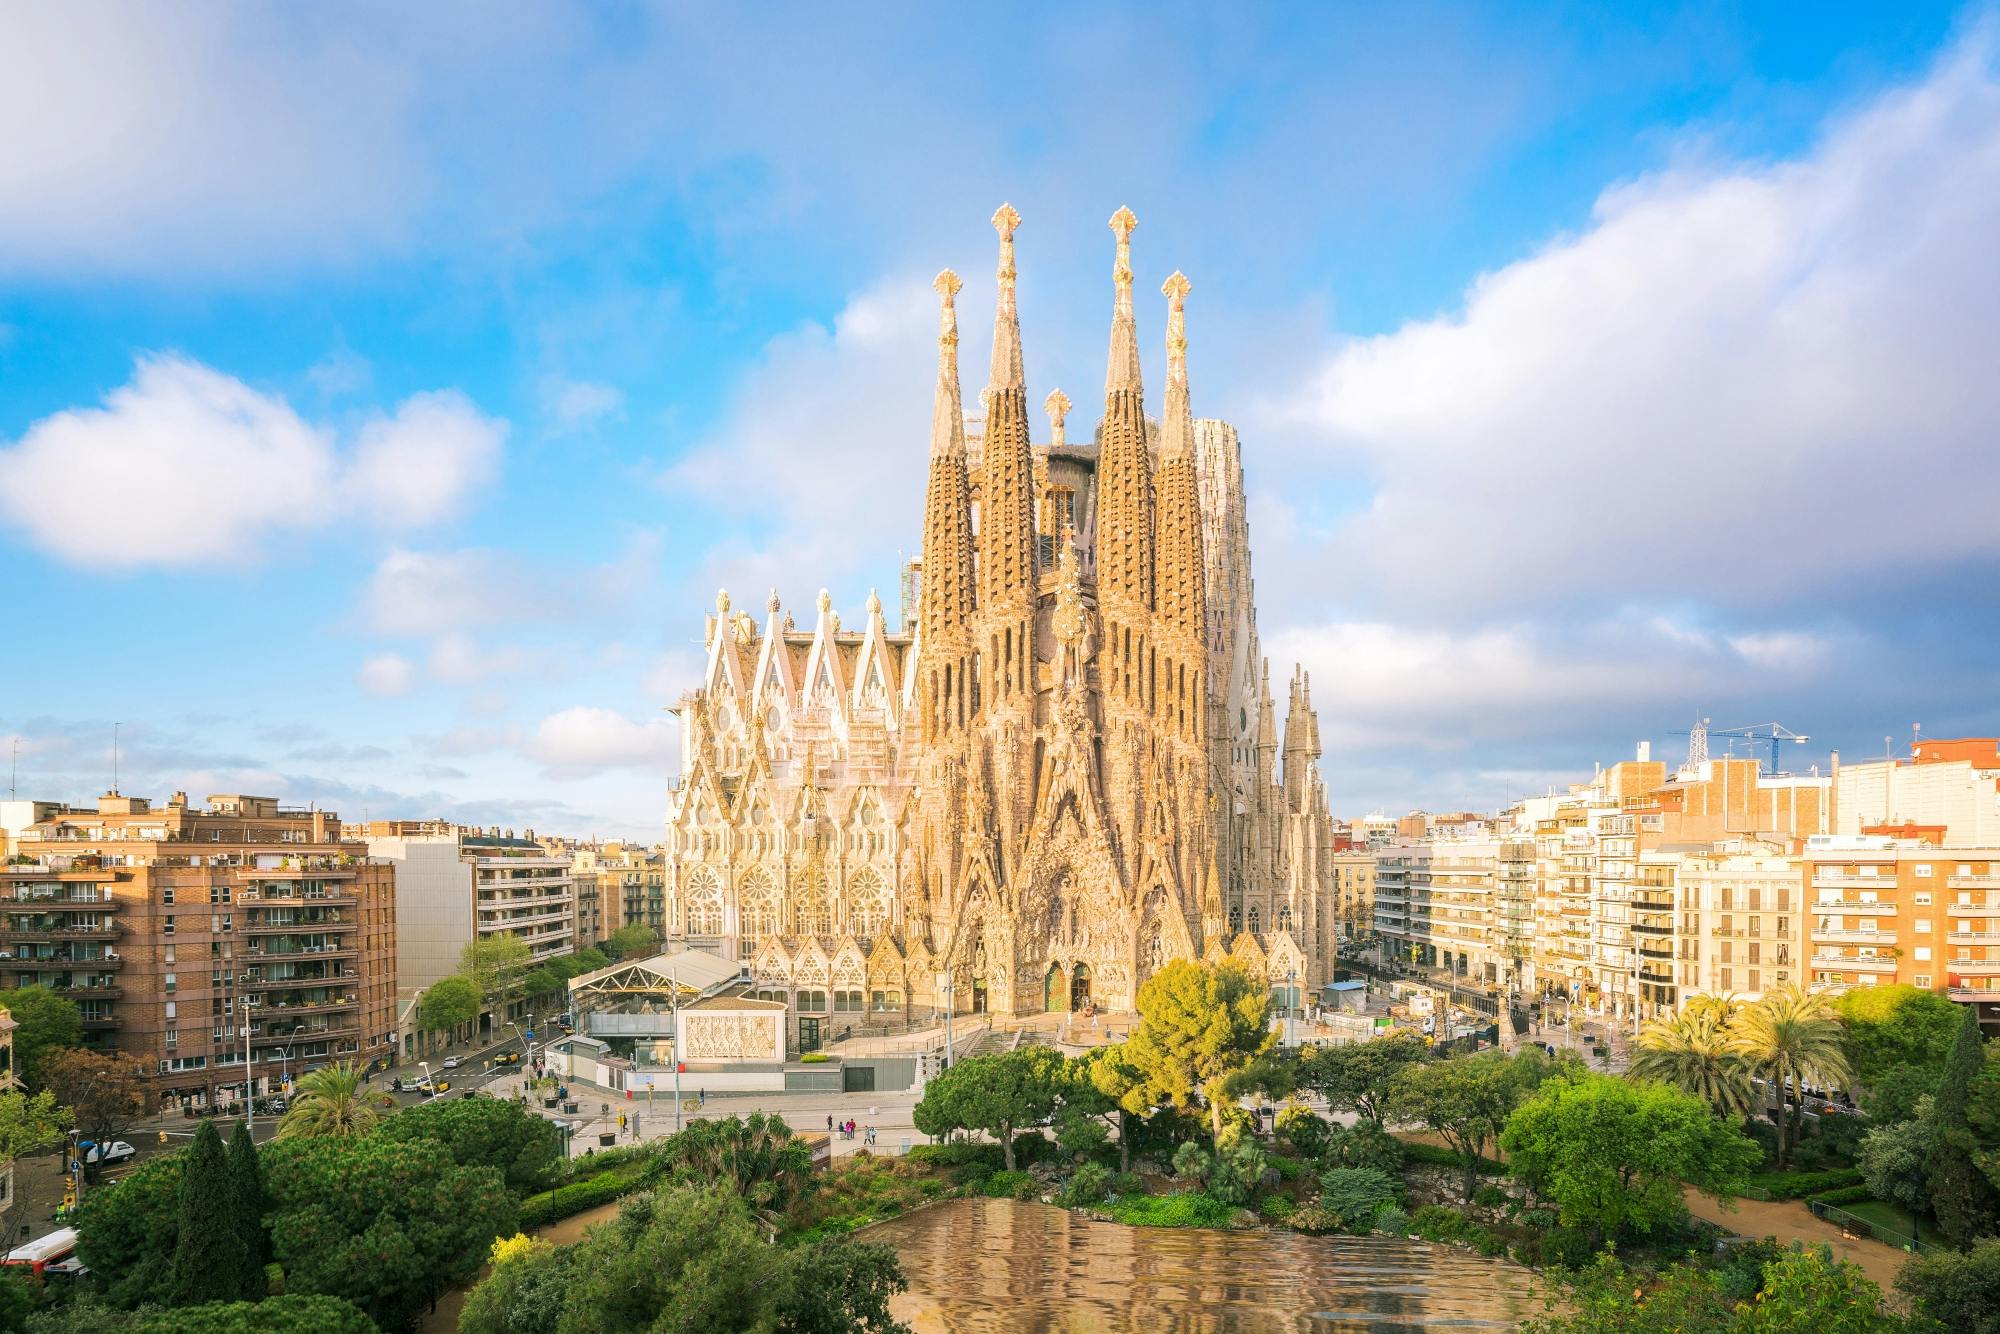 Prywatna wycieczka po Barcelonie z wejściem do Sagrada Familia